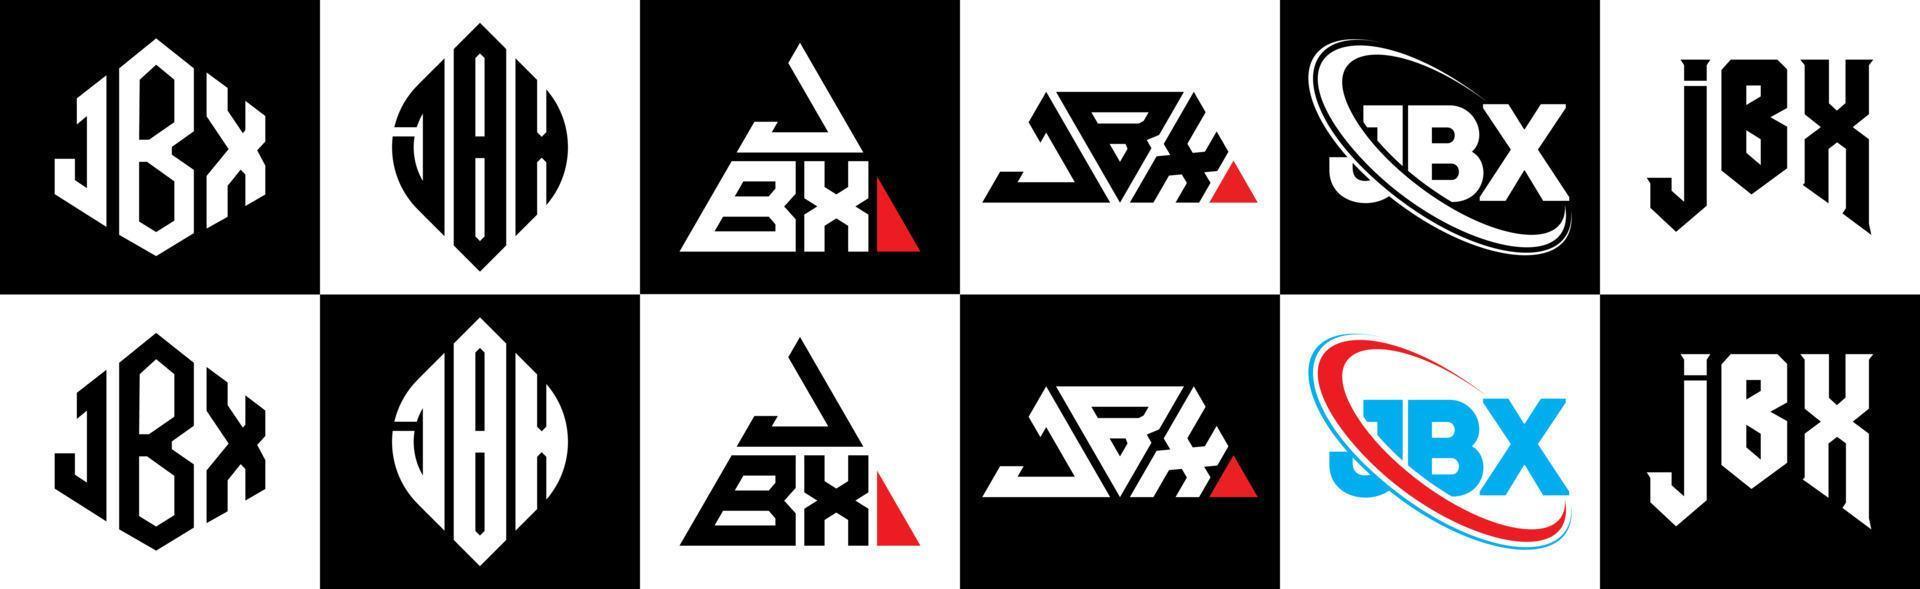 création de logo de lettre jbx en six styles. jbx polygone, cercle, triangle, hexagone, style plat et simple avec logo de lettre de variation de couleur noir et blanc dans un plan de travail. logo jbx minimaliste et classique vecteur